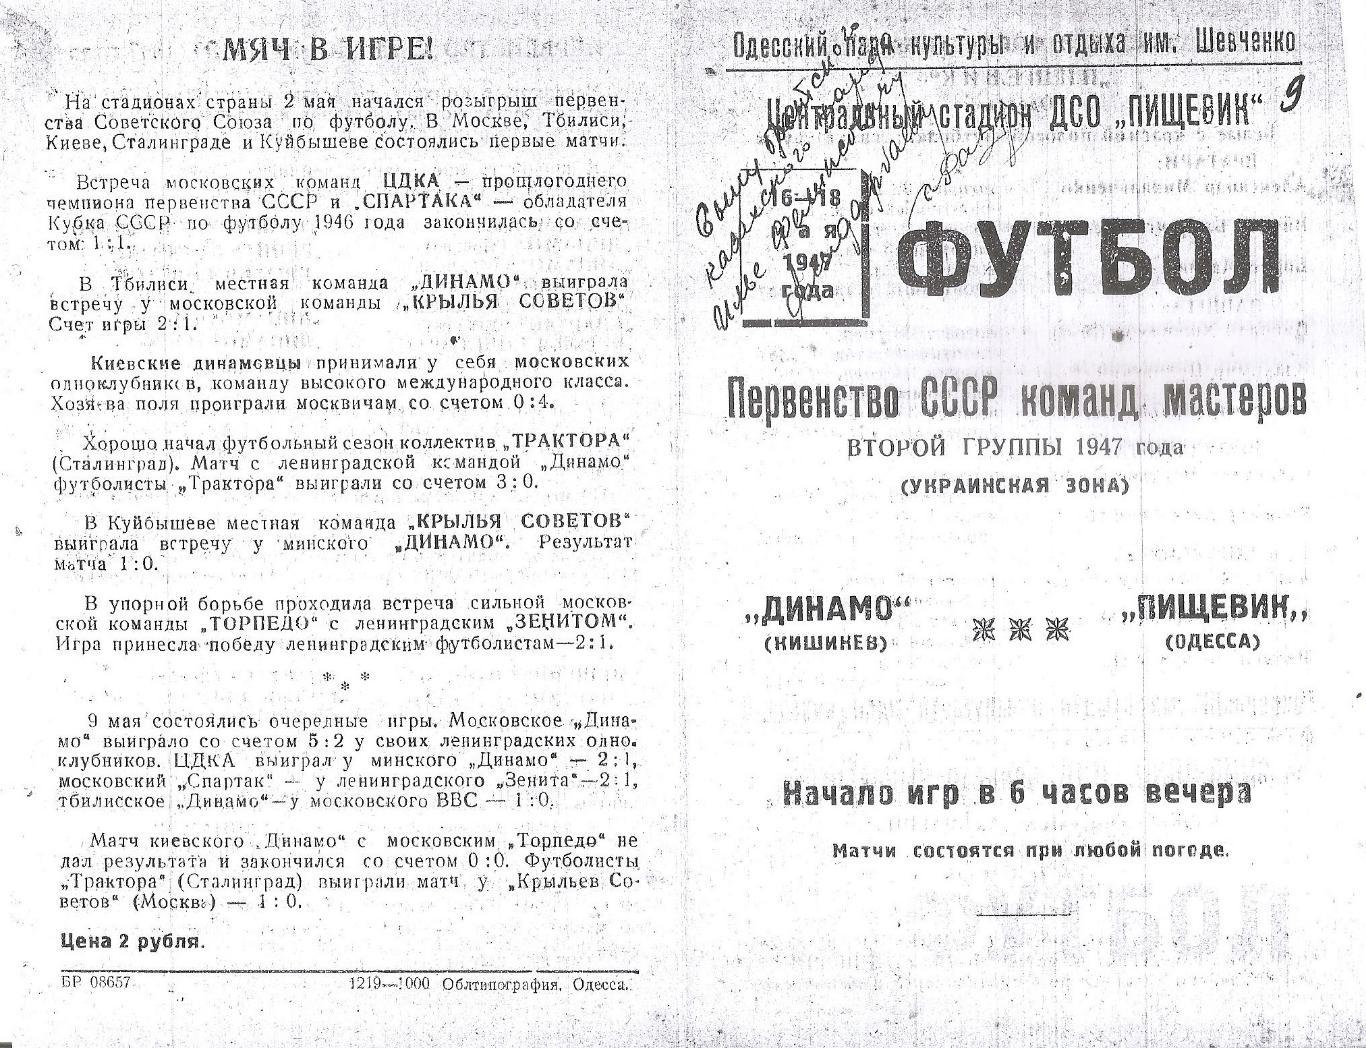 Пищевик Одесса - Динамо Кишинев 16 и 18.05.1947г. (копия)